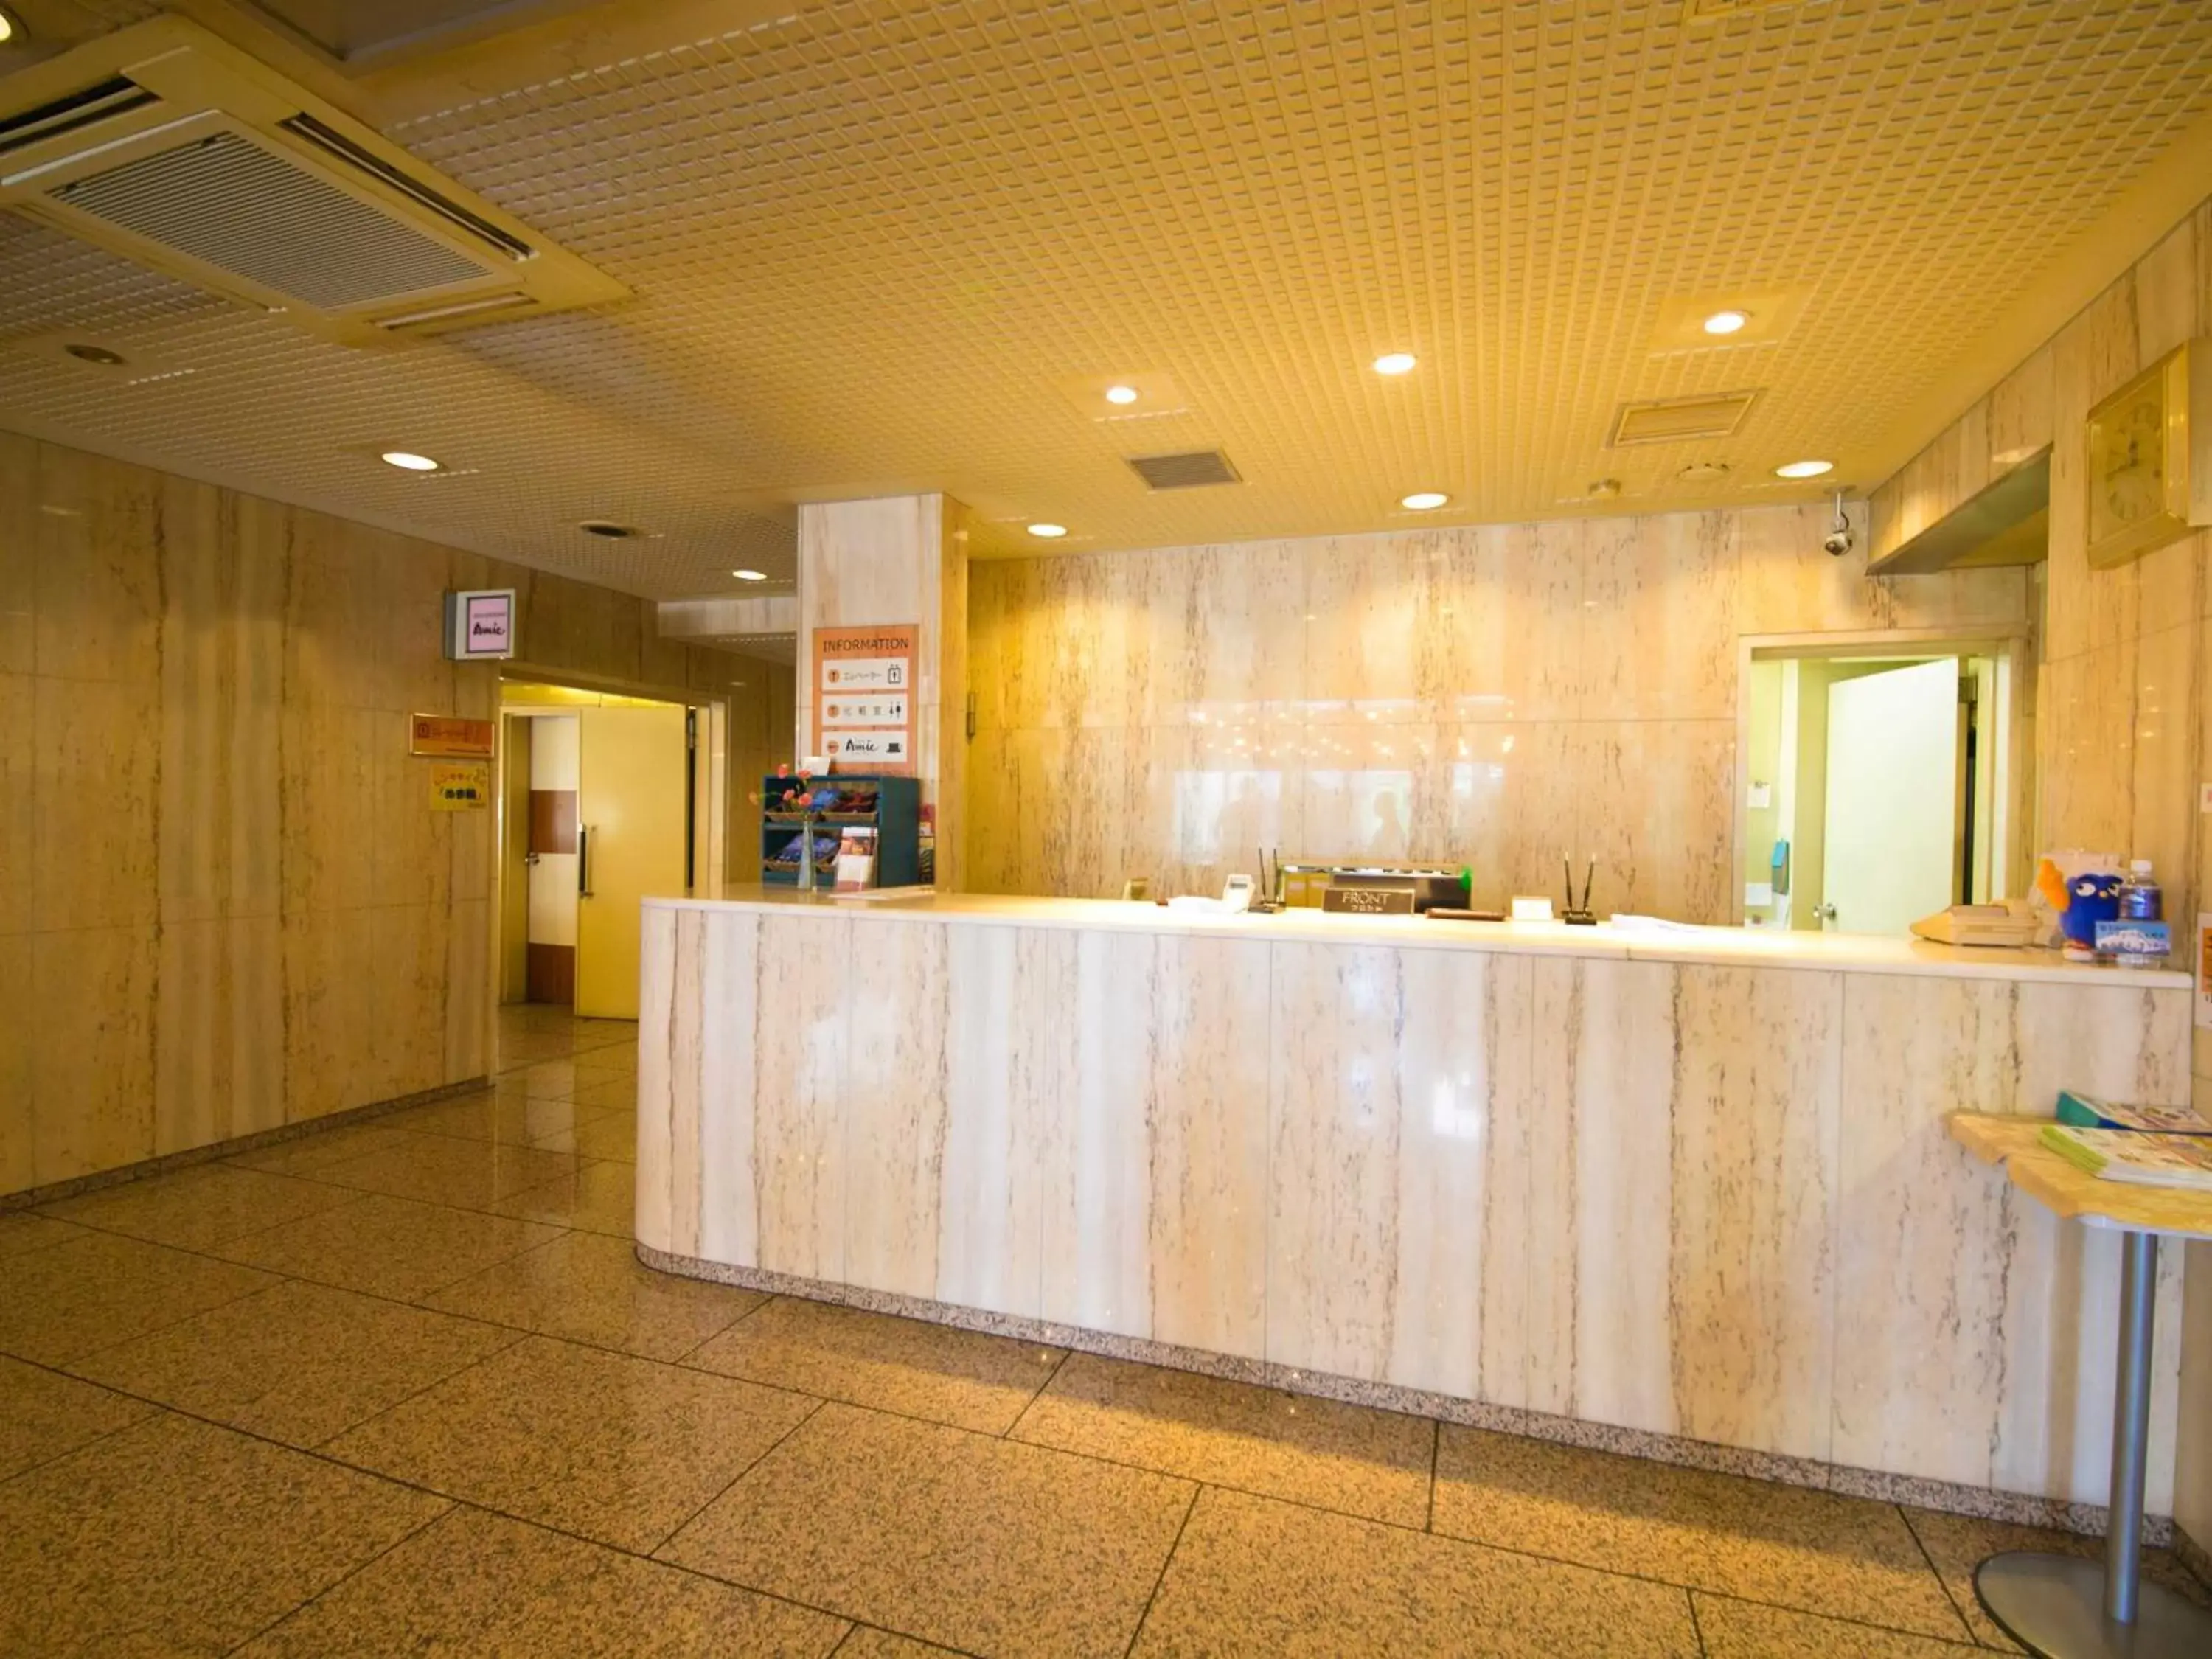 Lobby or reception, Lobby/Reception in Numazu Grand Hotel